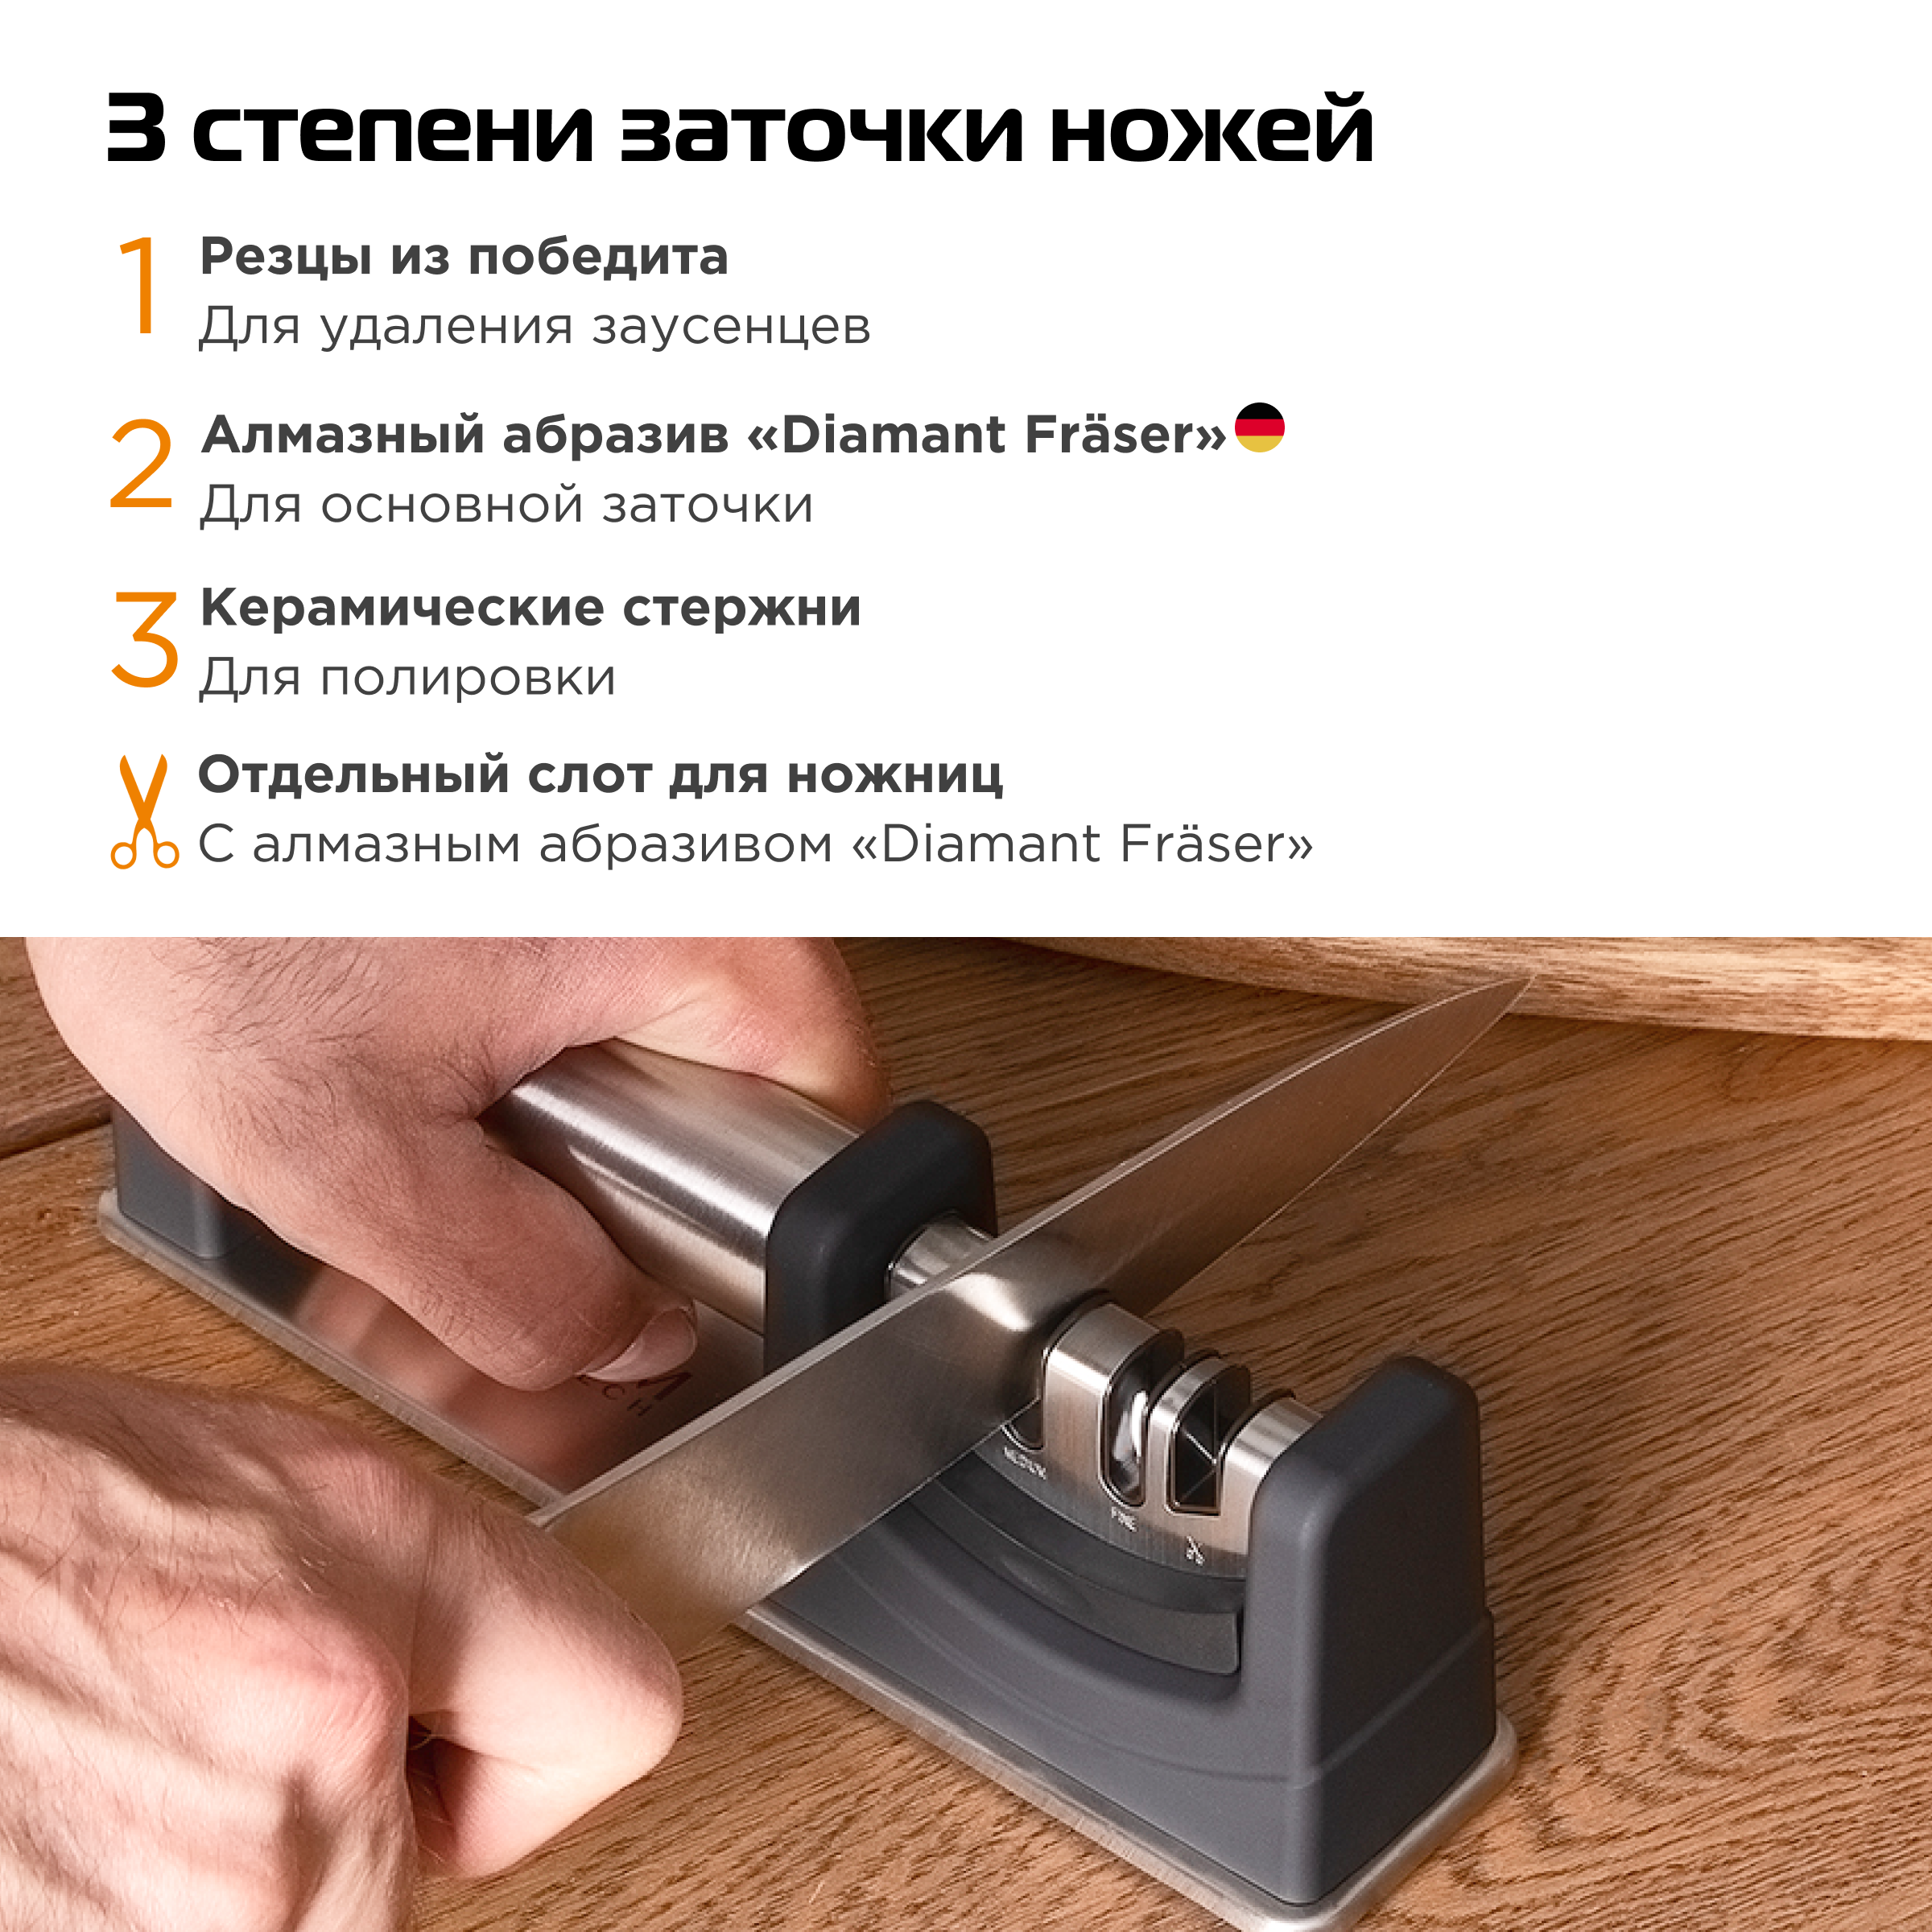 Точилка для ножей и ножниц механическая BAUM ZINDECH / Универсальная ножеточка ручная / Заточка для ножей настольная